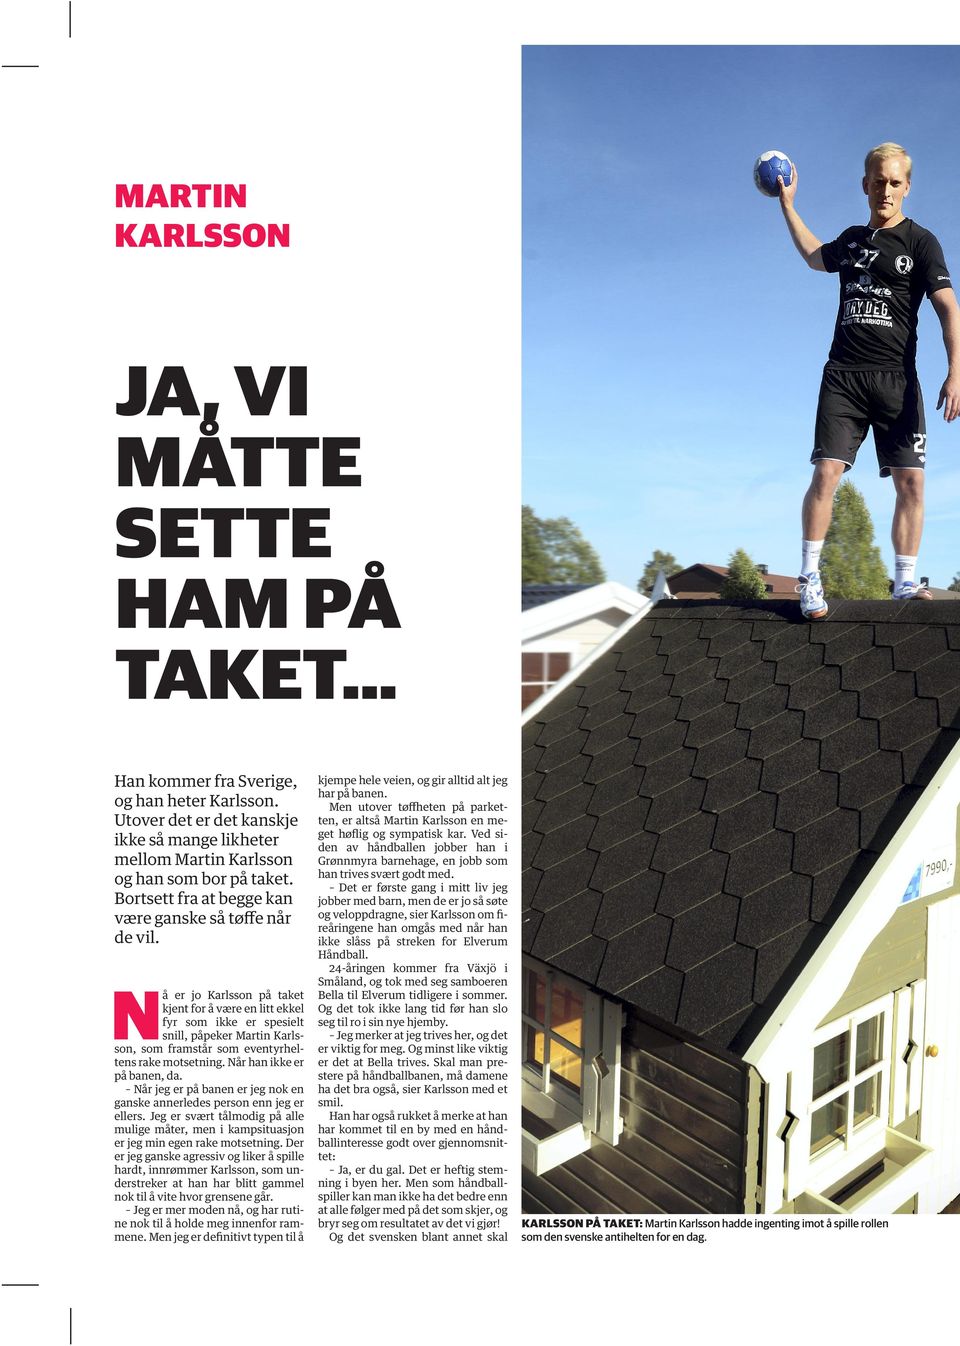 Nå er jo Karlsson på taket kjent for å være en litt ekkel fyr som ikke er spesielt snill, påpeker Martin Karlsson, som framstår som eventyrheltens rake motsetning. Når han ikke er på banen, da.